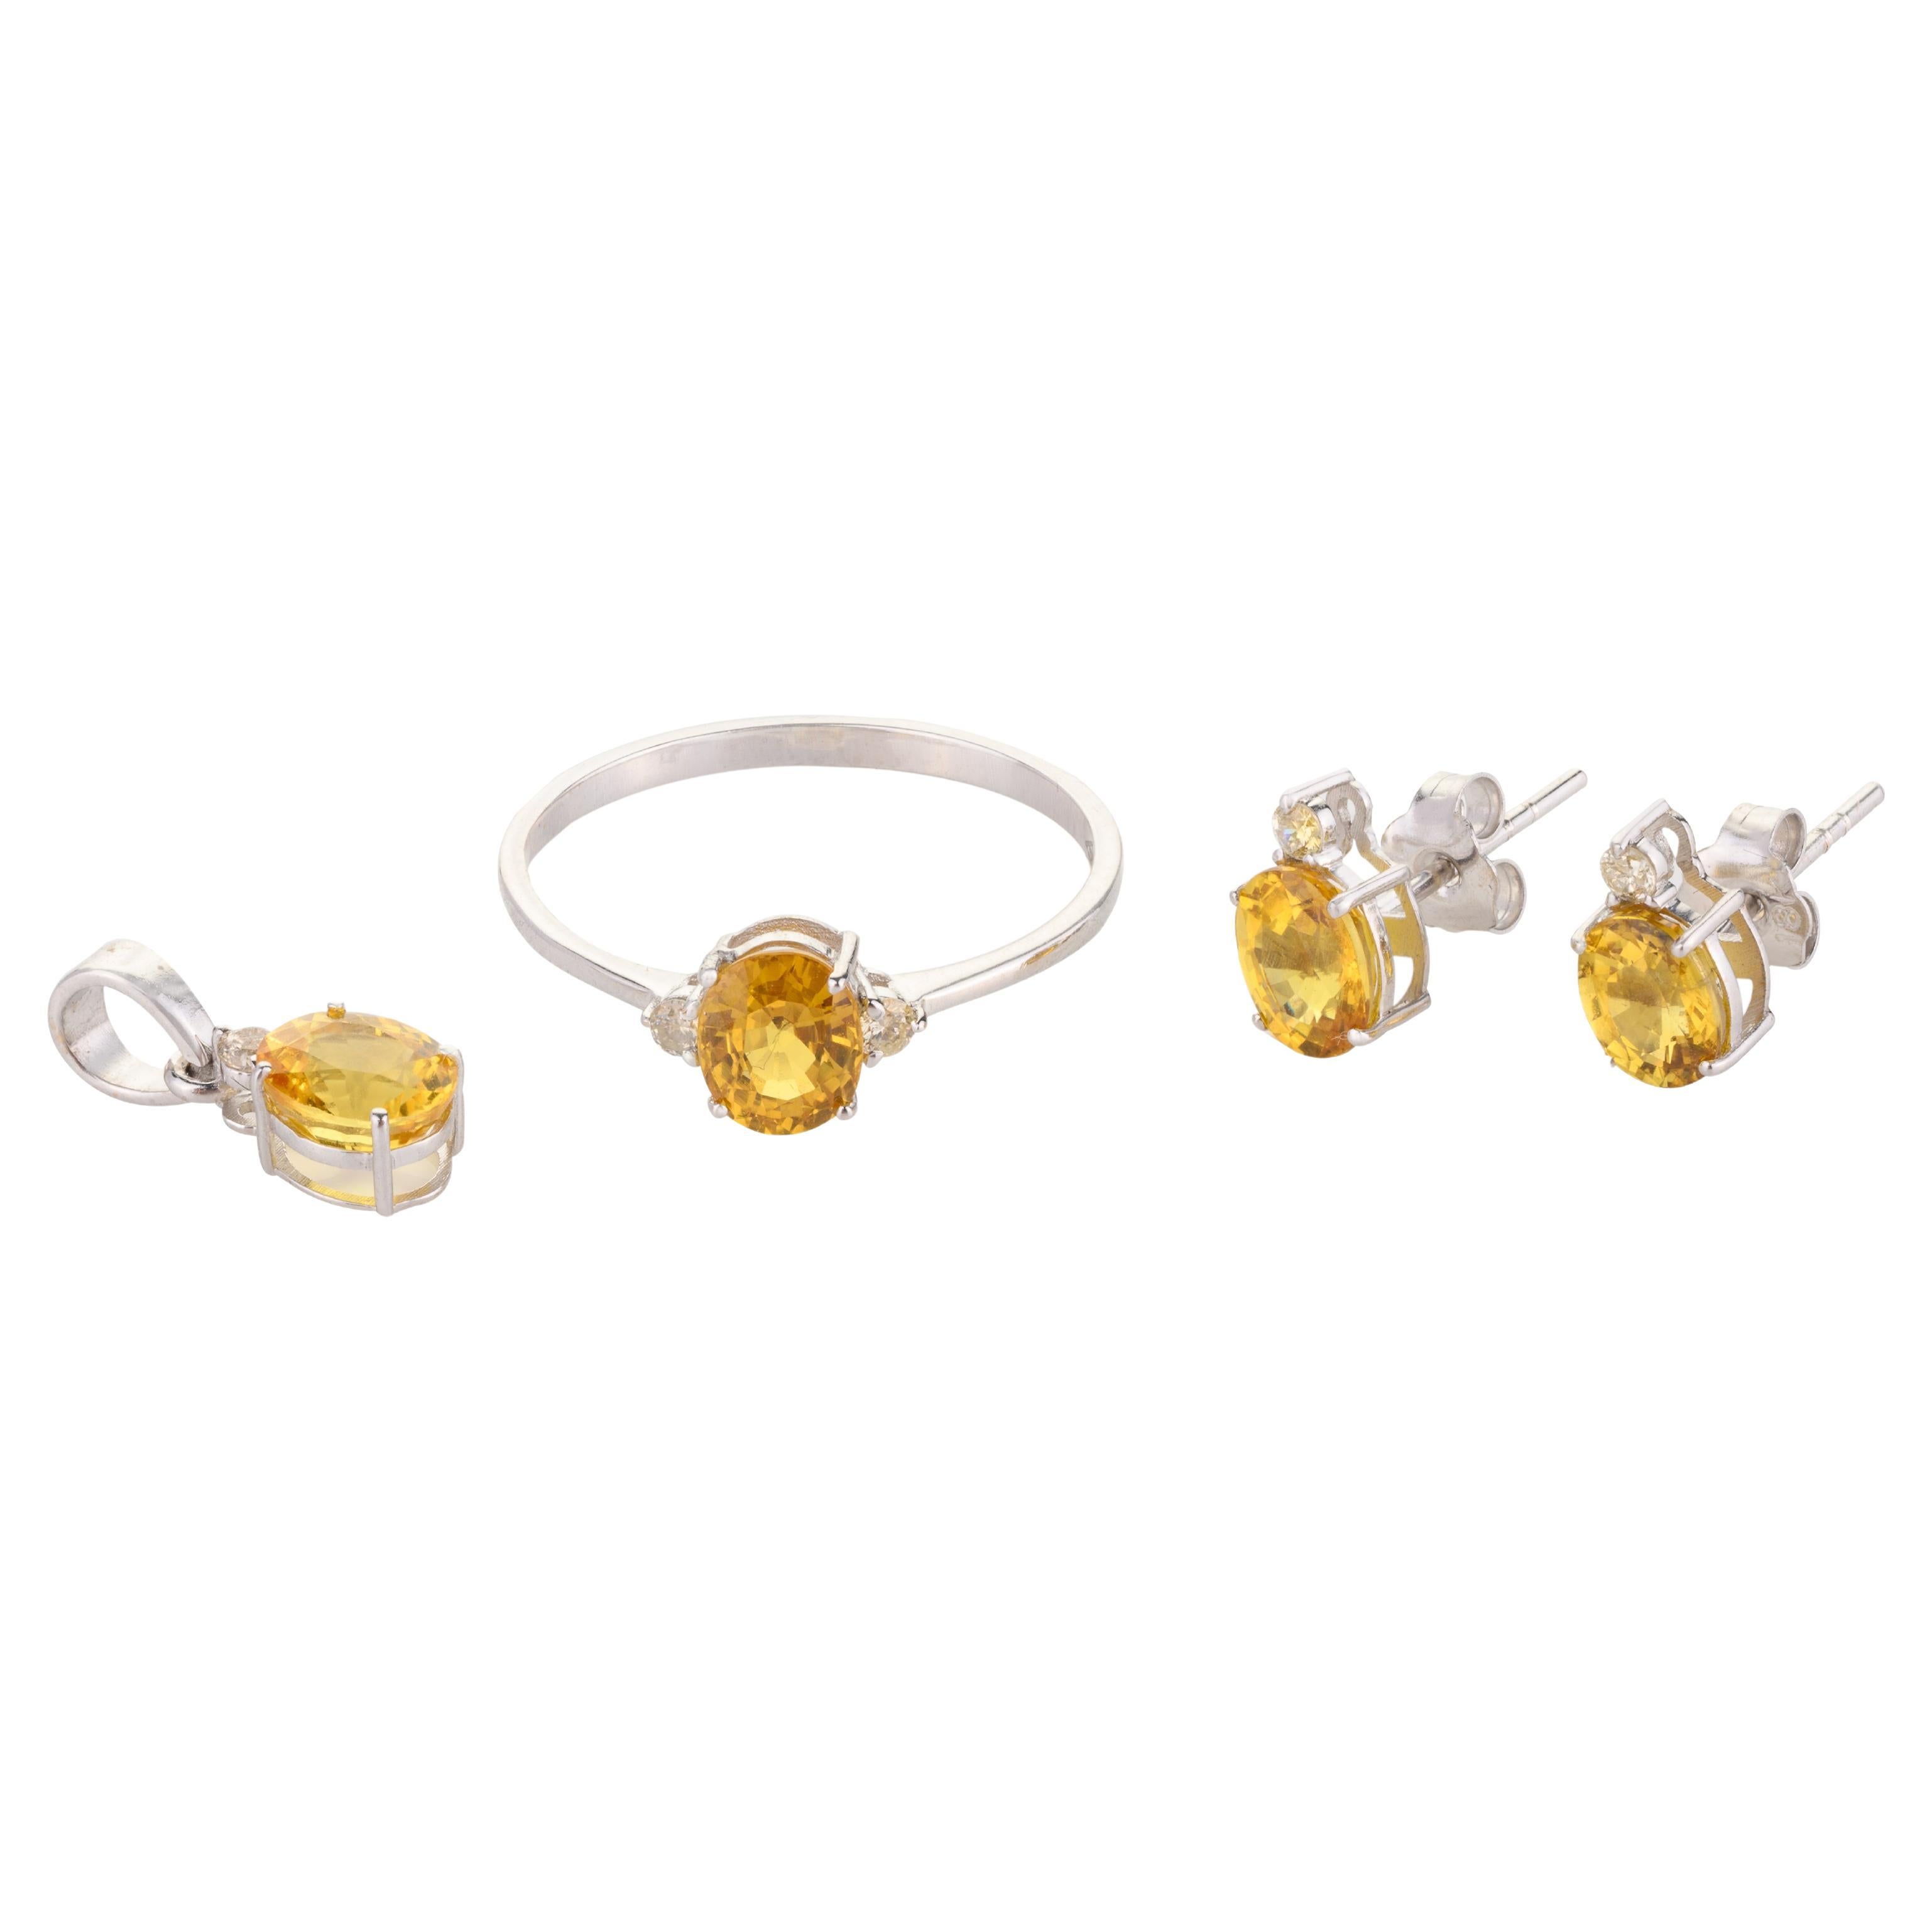 Pendentif, bague et boucles d'oreilles en or blanc 18k avec saphirs jaunes et diamants